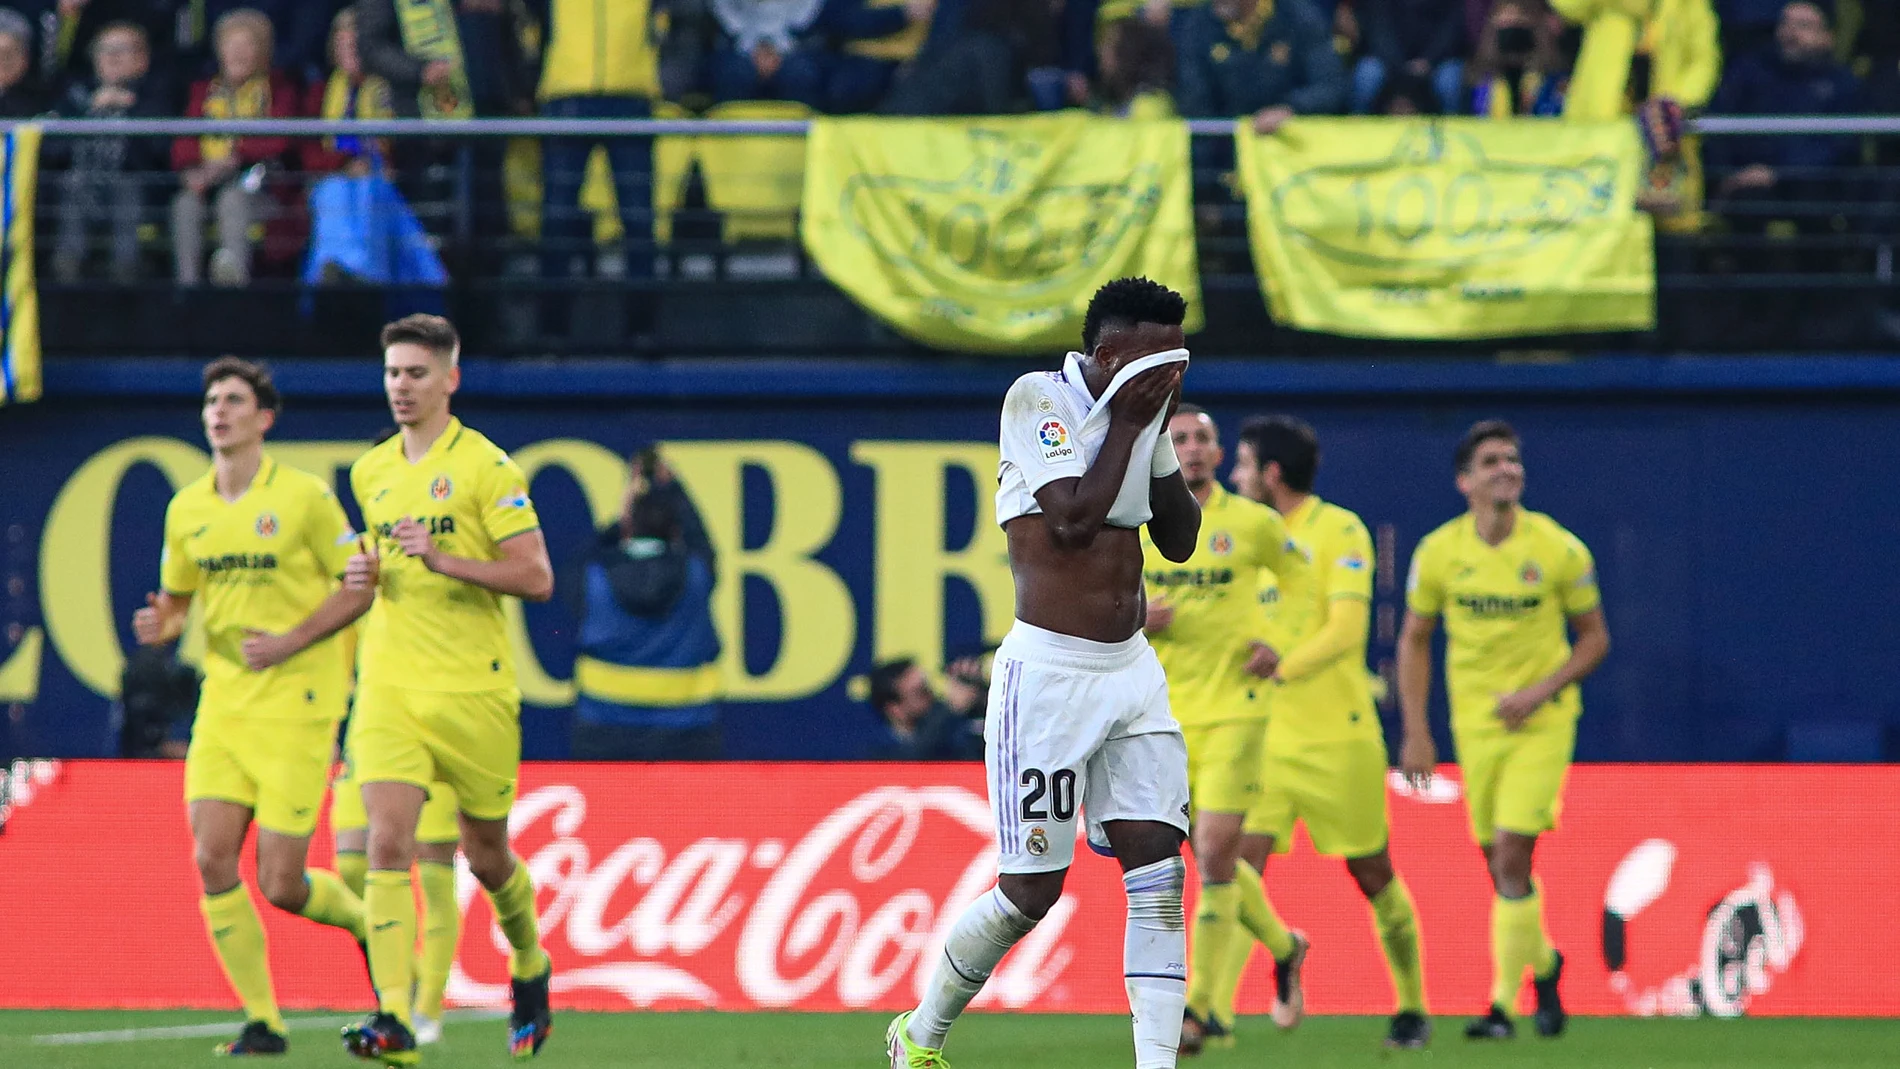 Villarreal - Real Resultado, resumen y goles del LaLiga, en directo (2-1)